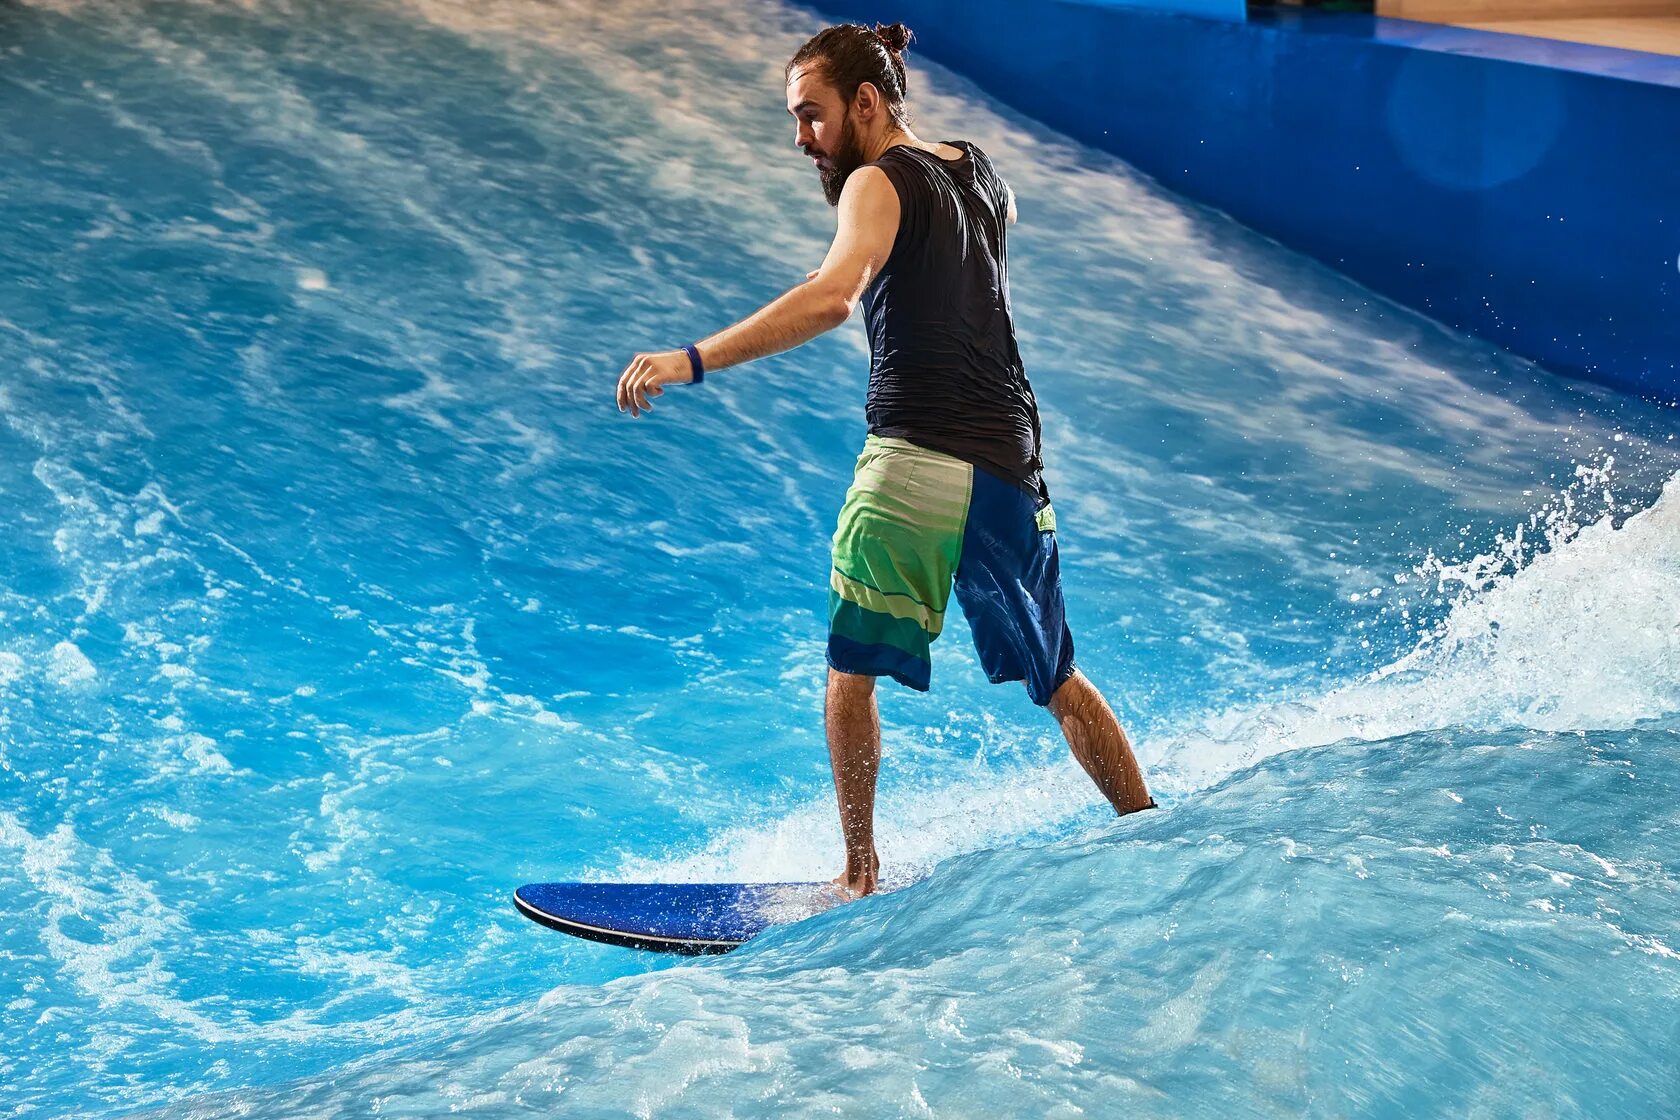 Питерлэнд серфинг. Серф волна в Москве. Аквапарк Питерлэнд сёрфинг. Серфинг на искусственной волне.